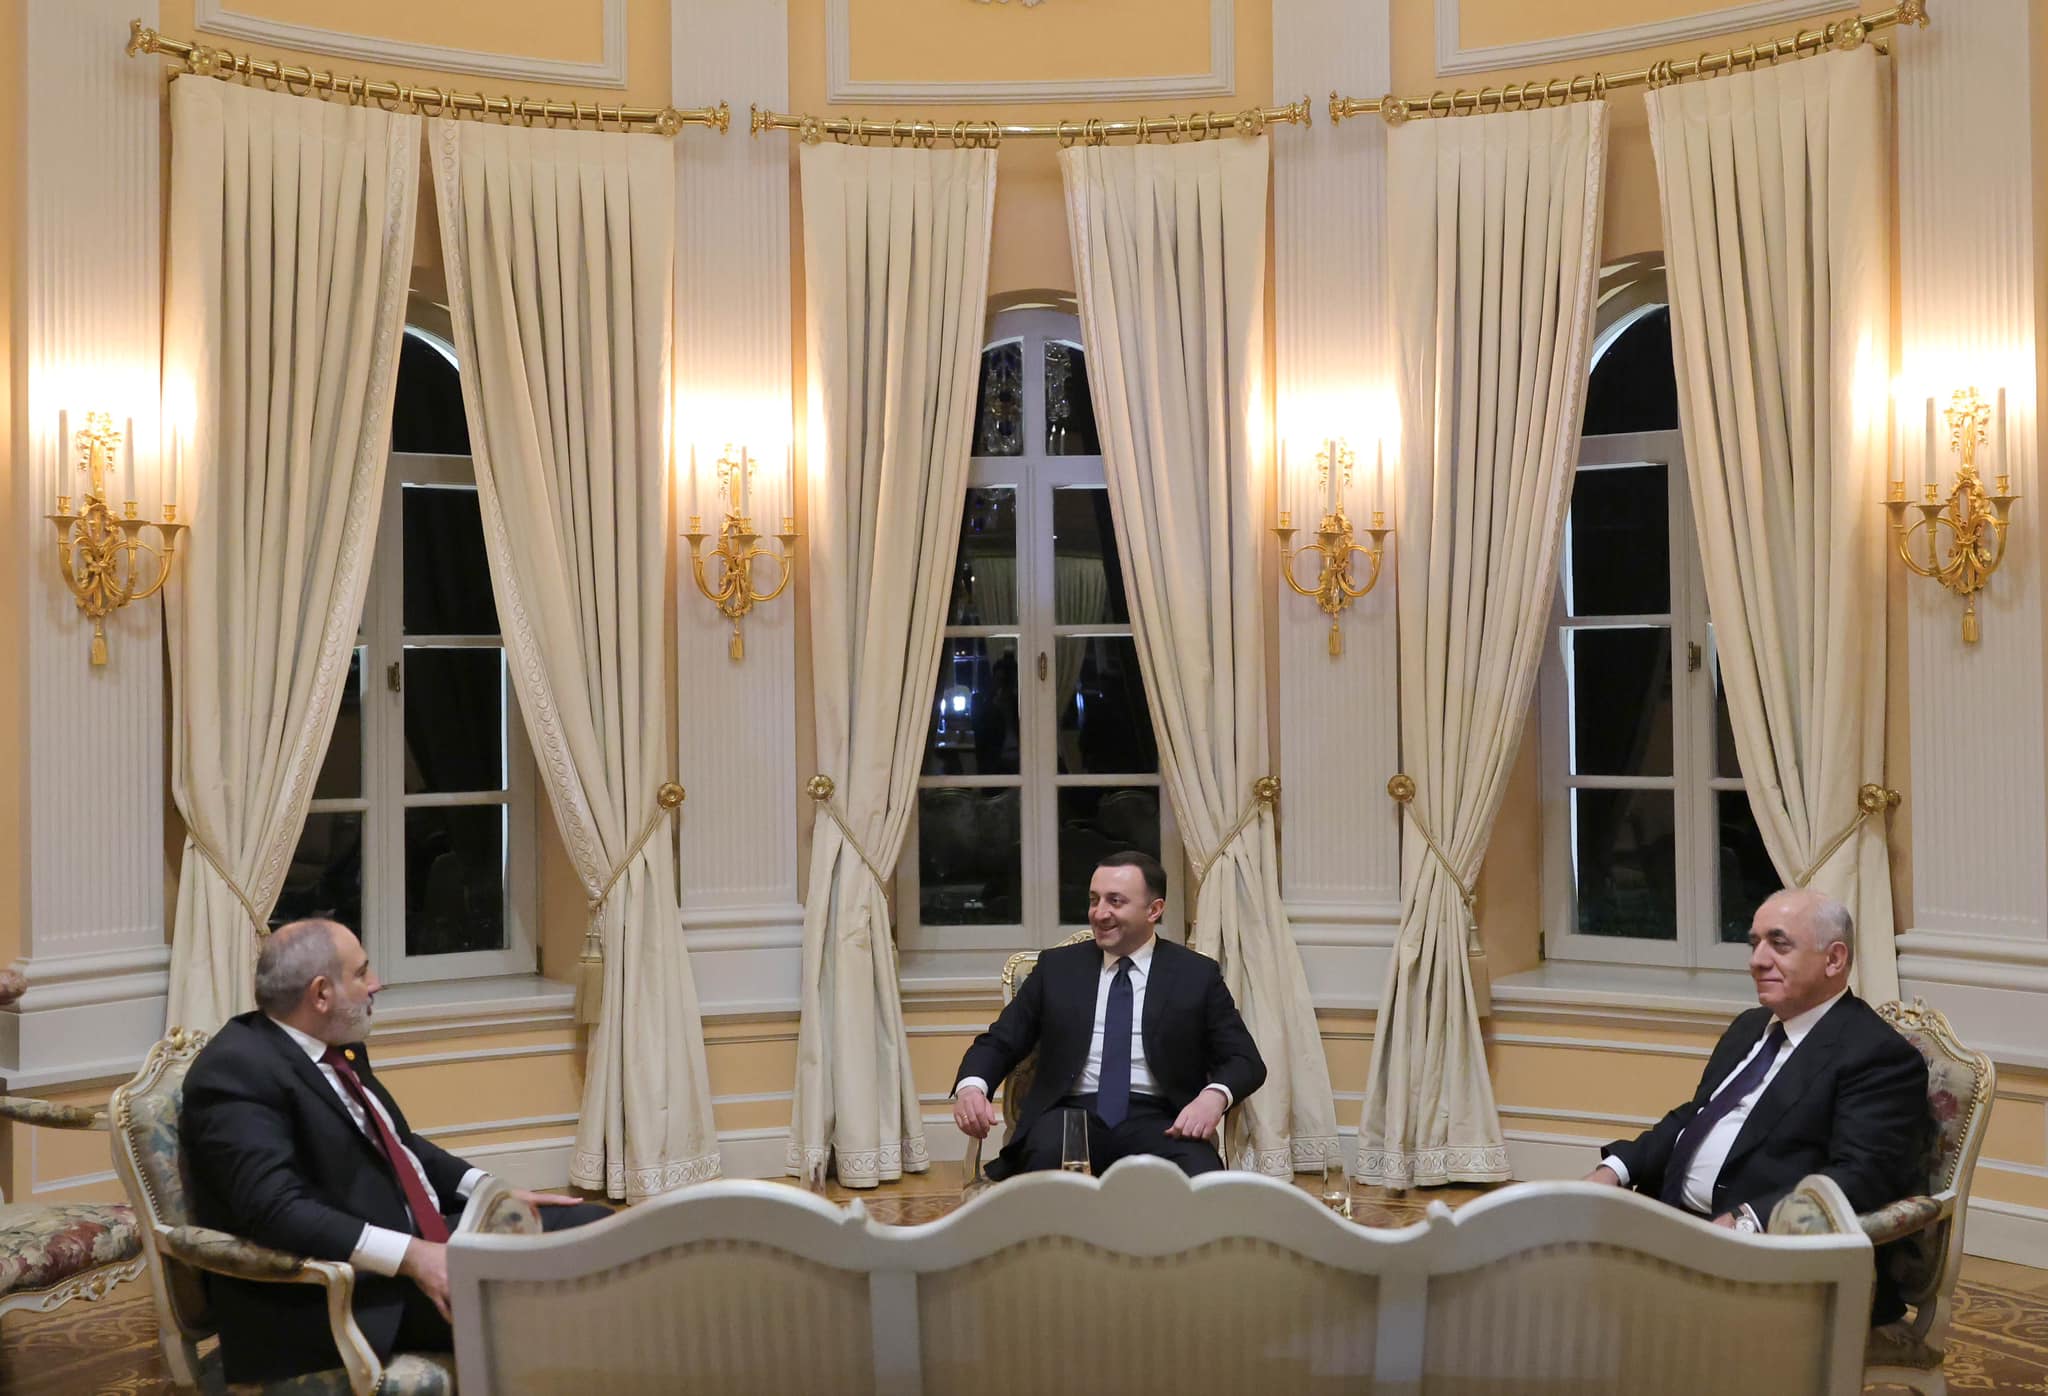 Հաճելի էր տեսնել, որ երկու երկրների վարչապետները Վրաստանում միասին մասնակցում էին նույն ֆորումին. Բոճորիշվիլին՝ Փաշինյանի ու Ասադովի մասին